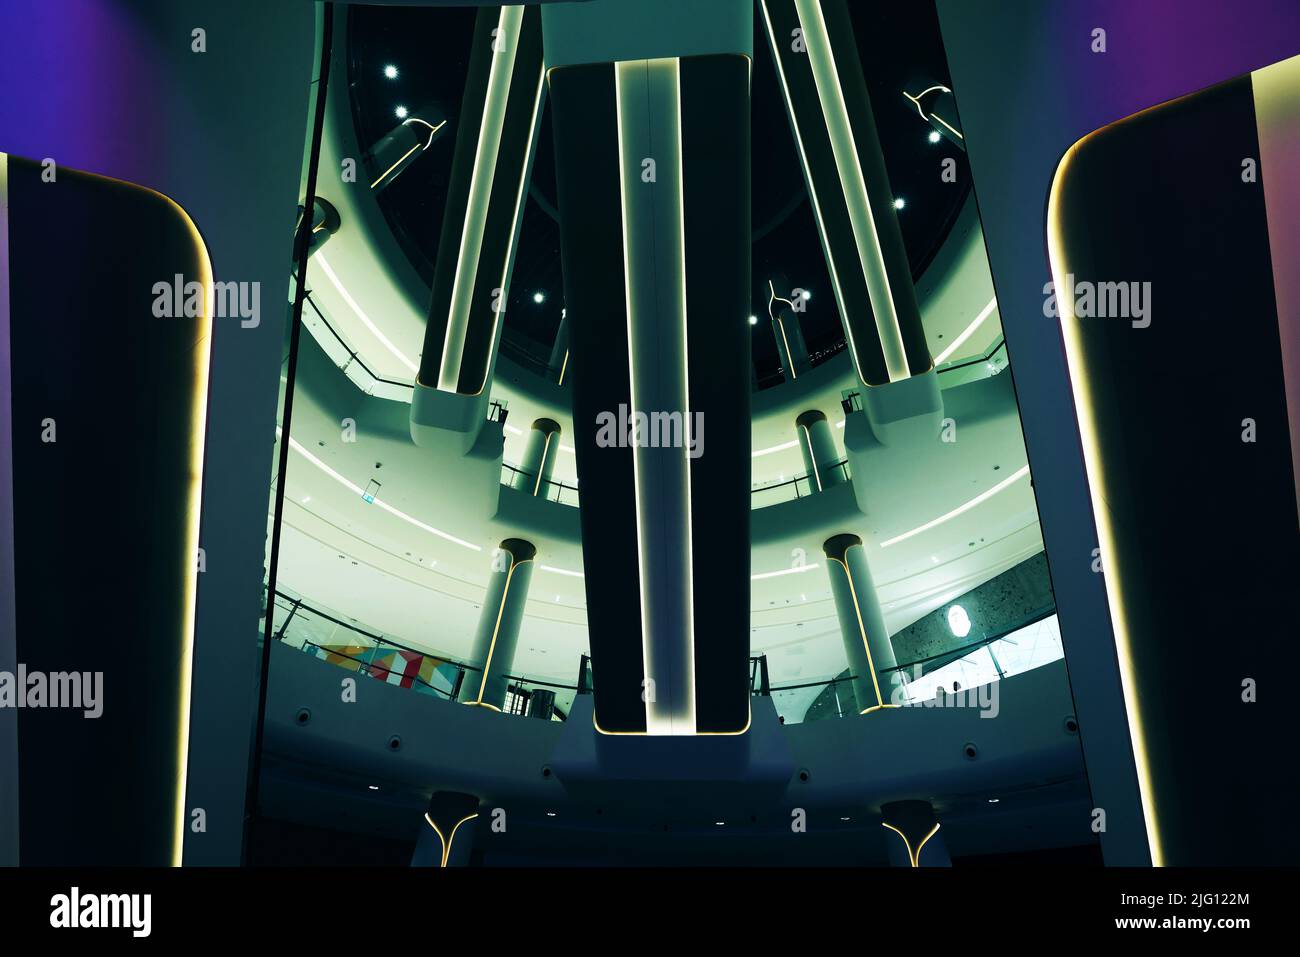 Rolltreppen, Dubai Mall, mode, atemberaubend, Einkaufszentrum, Umwerfende Architektur U. Gänscher, Gänscher und Handel mit Schäften Banque D'Images